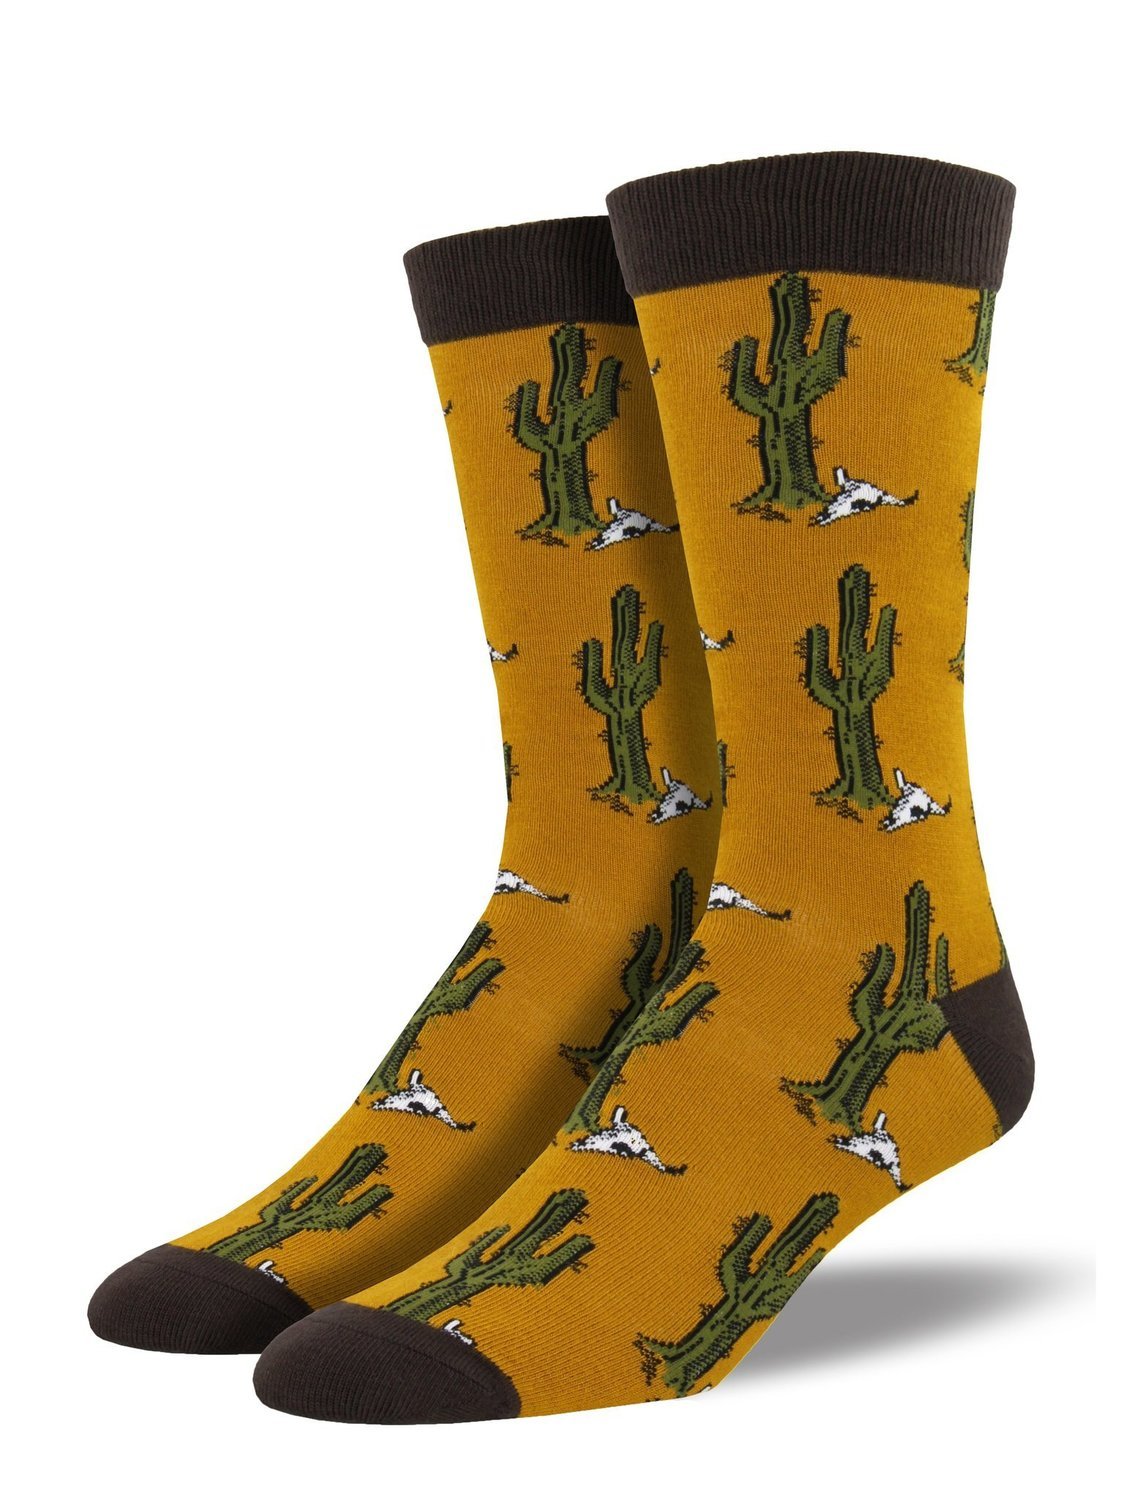 Sock Smith Bamboo Desert Cactus Men's Socks